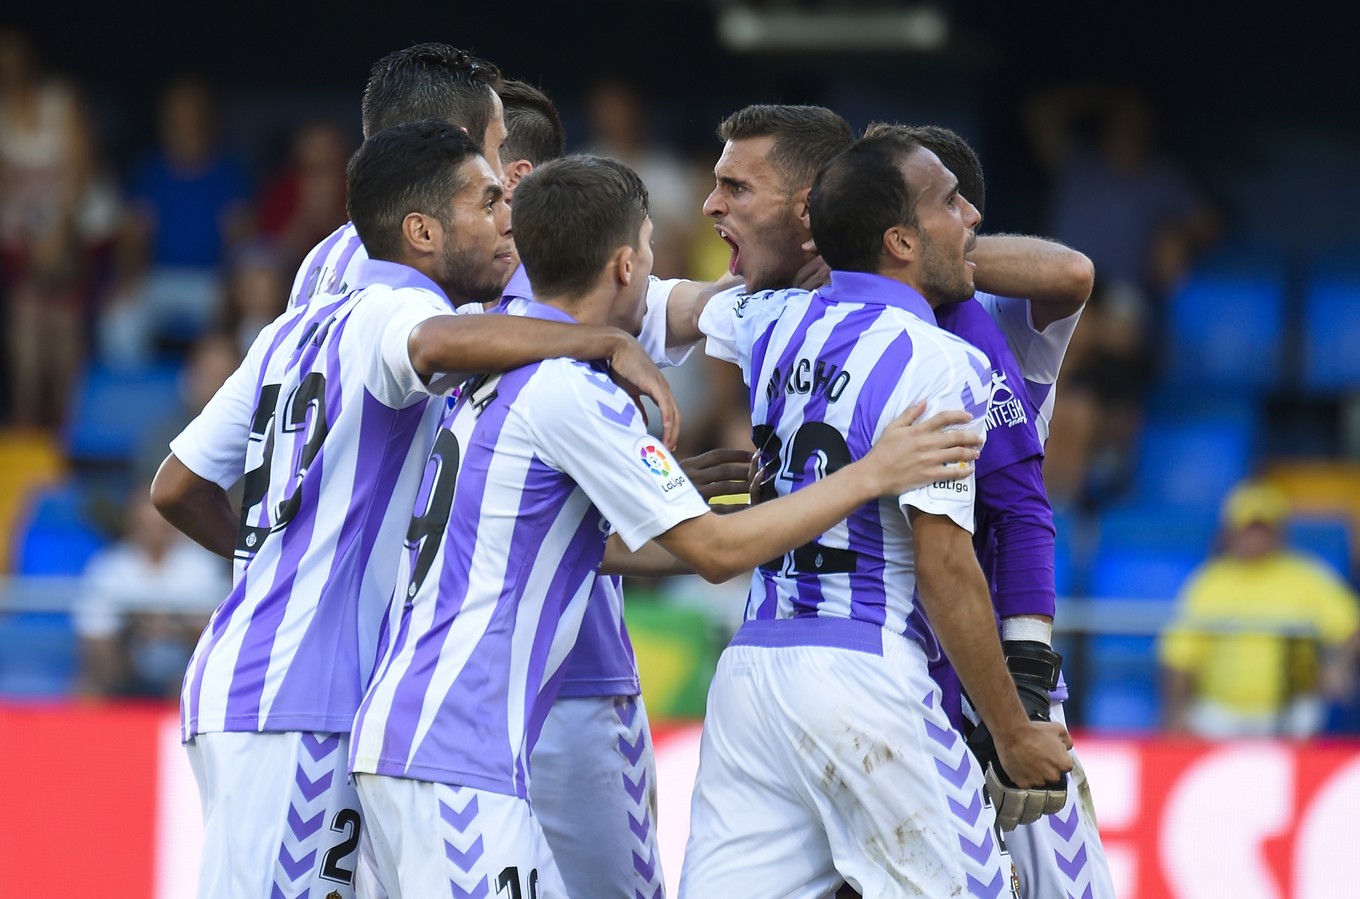 Efeito Ronaldo? Valladolid vence quatro seguidas pela primeira vez no século e deslancha no Espanhol